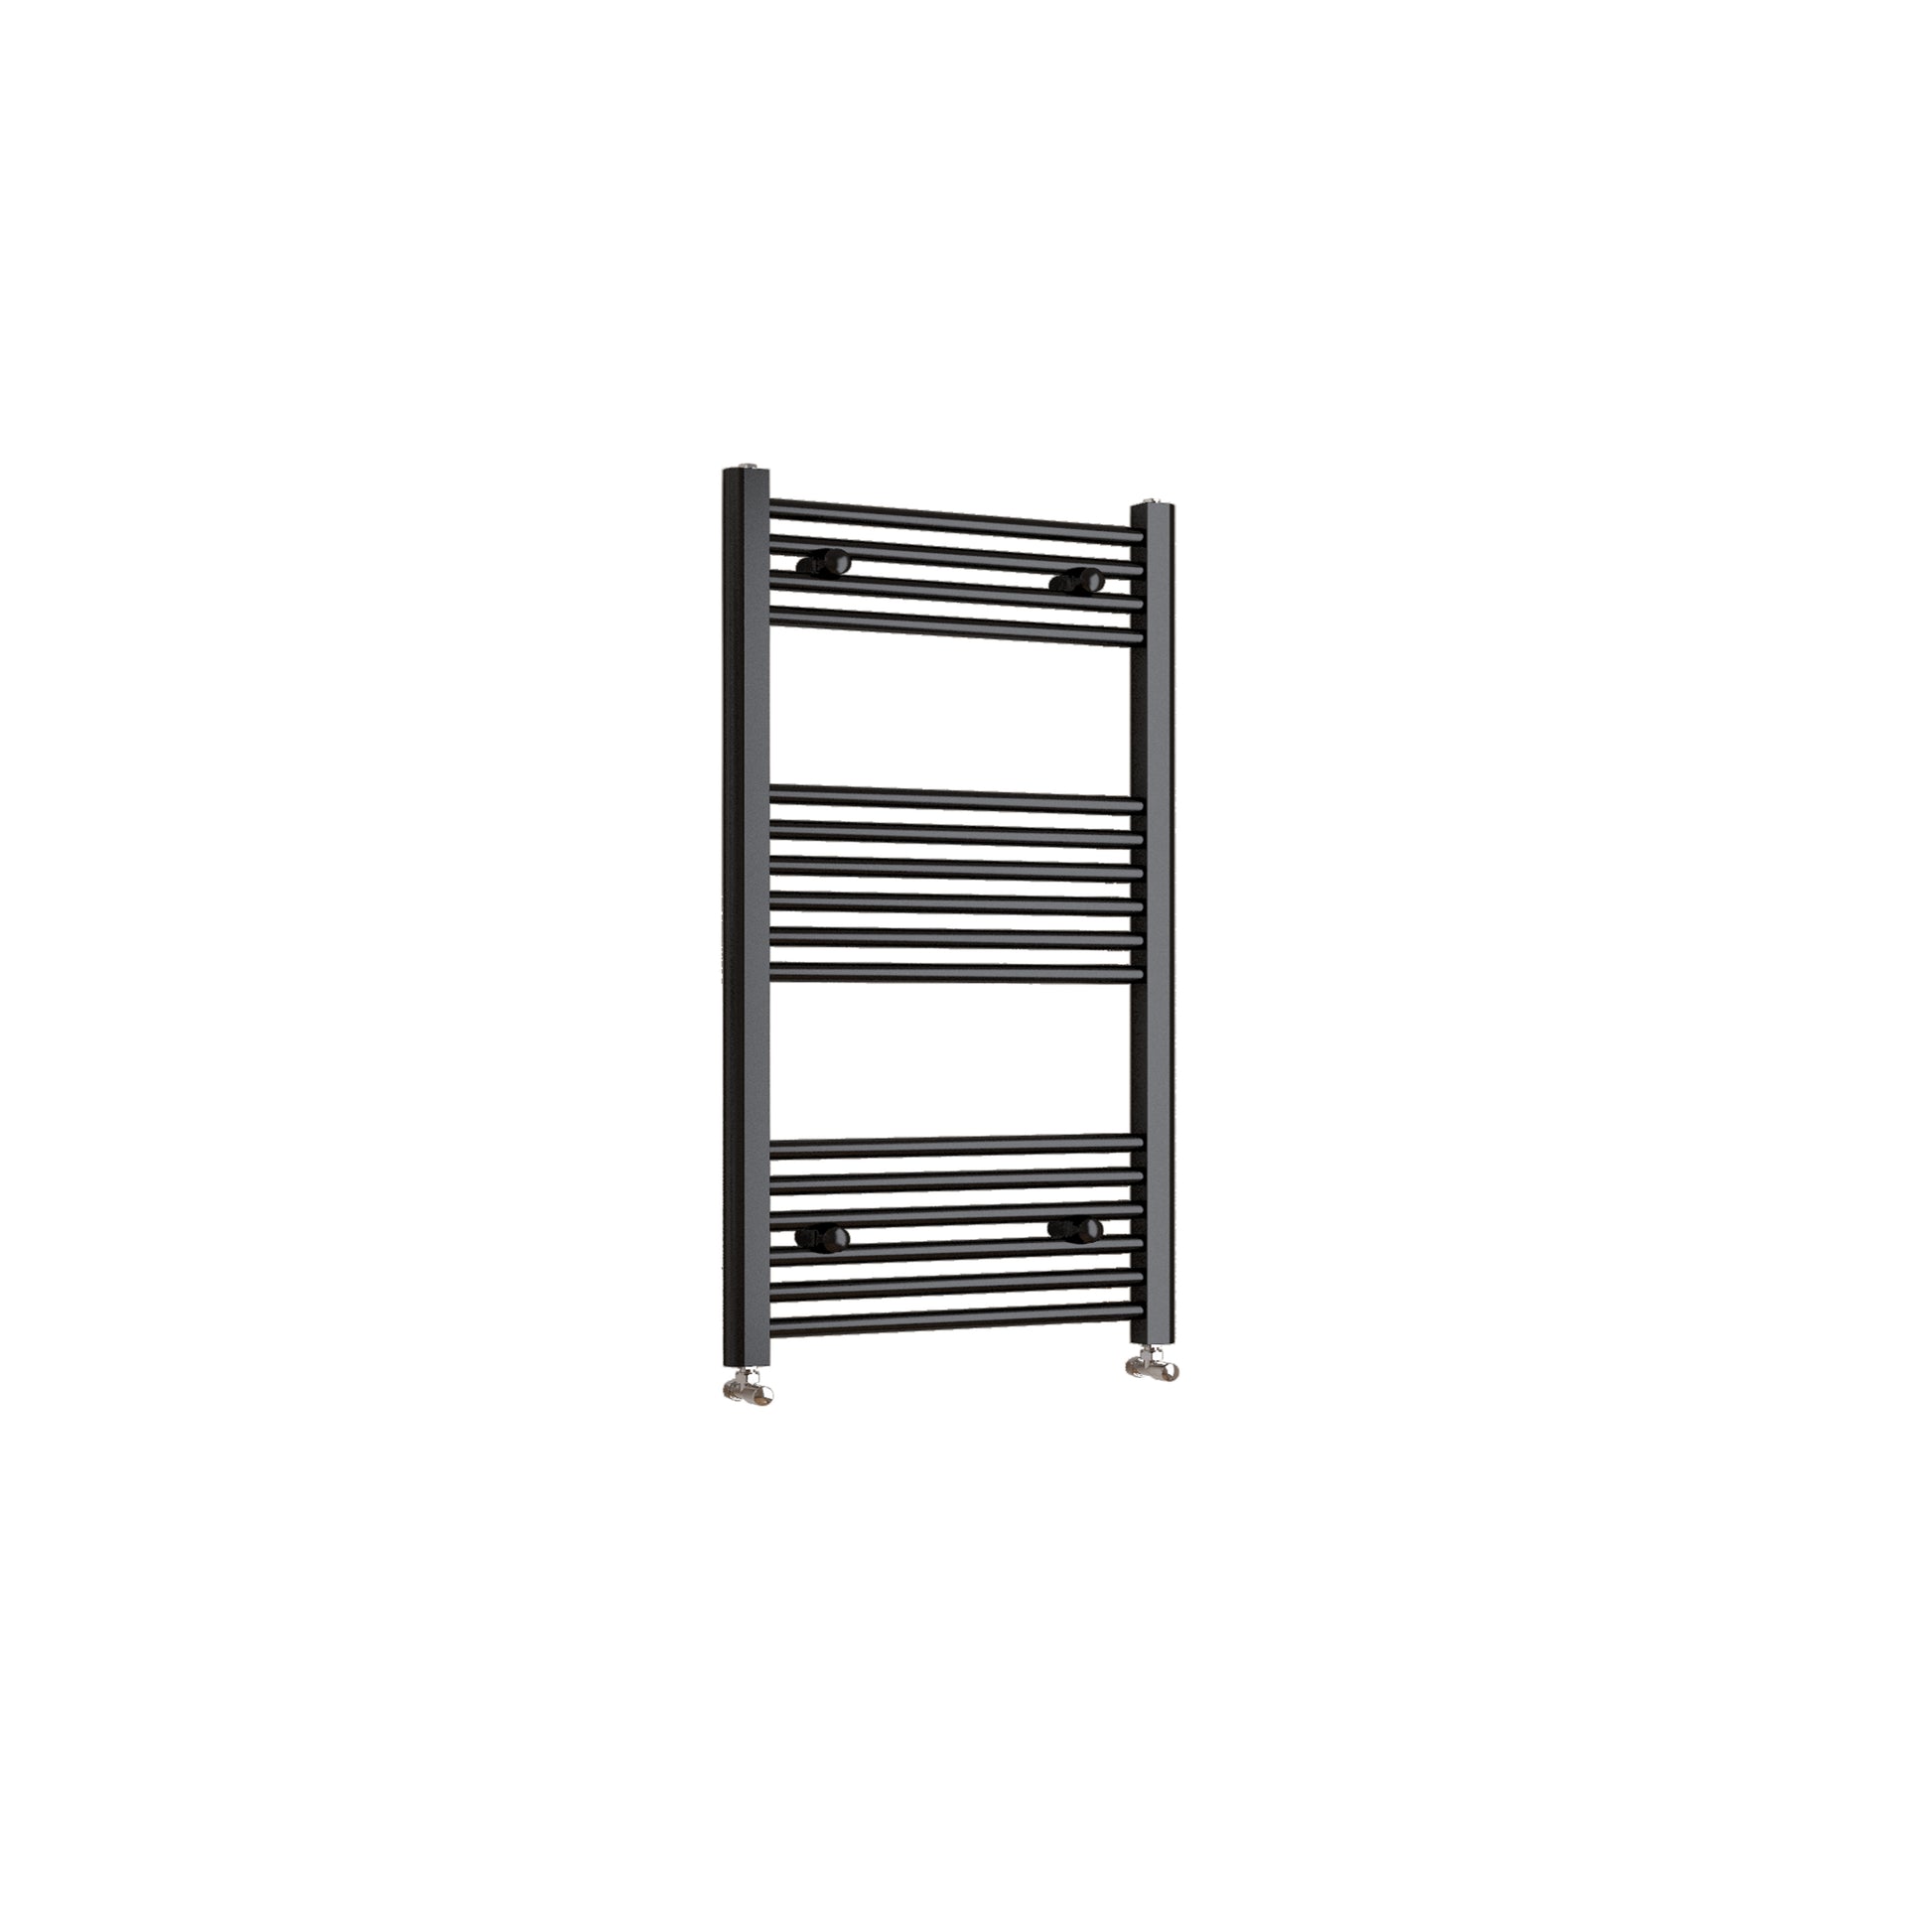 Black Heated Towel Rail Straight Bathroom Ladder Radiator